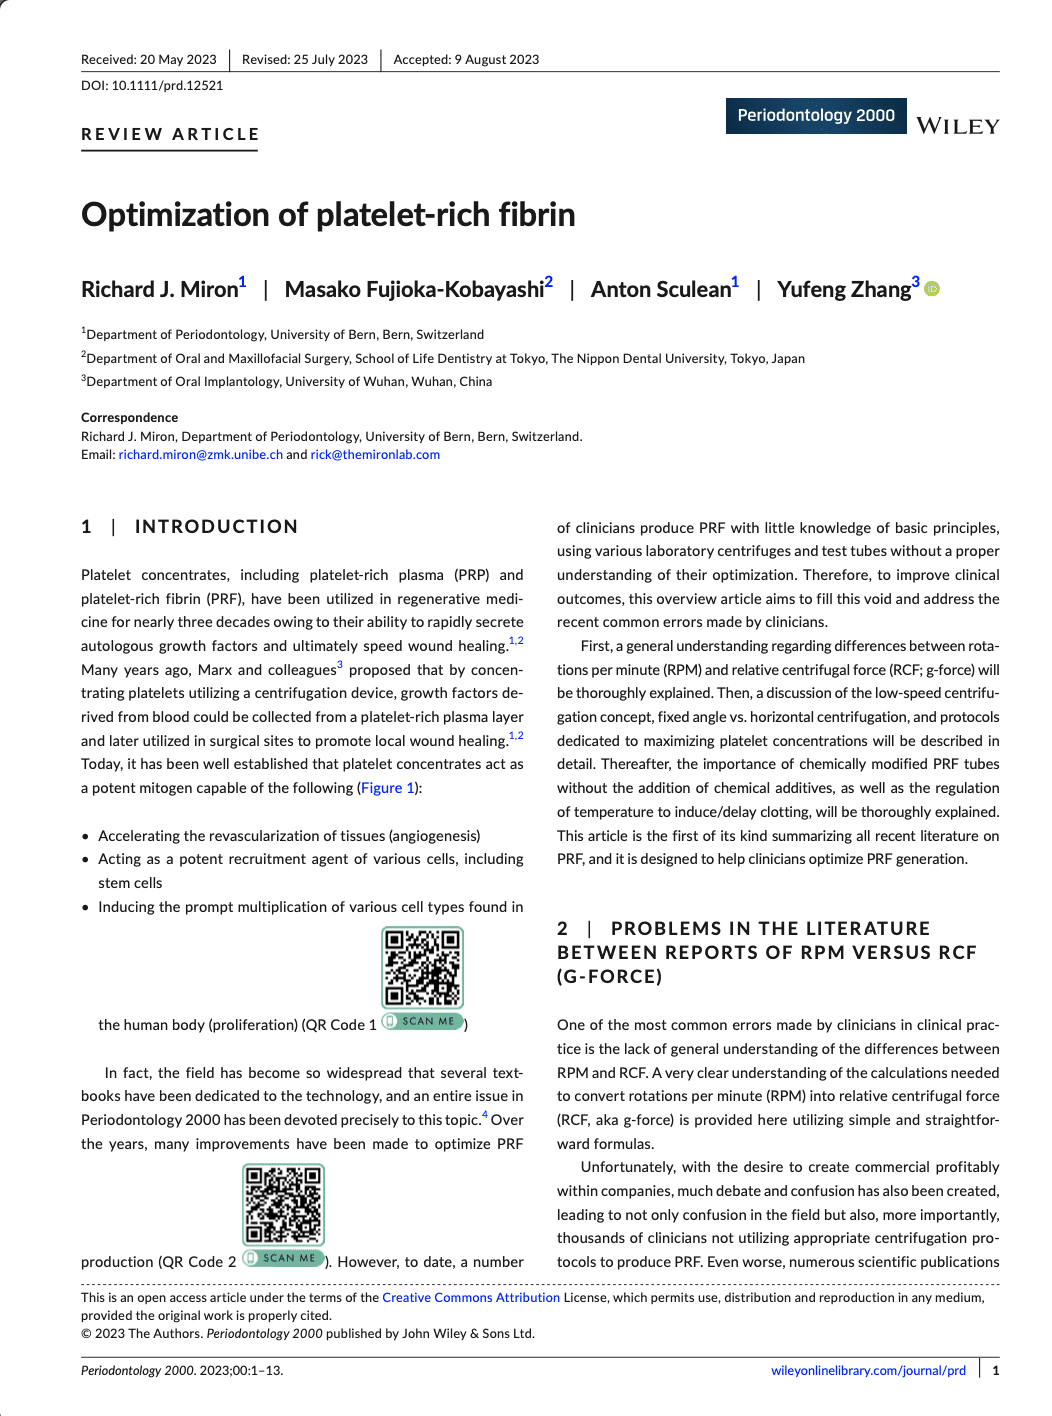 Optimization of Platelet Rich Fibrin By Miron et al, (2023)